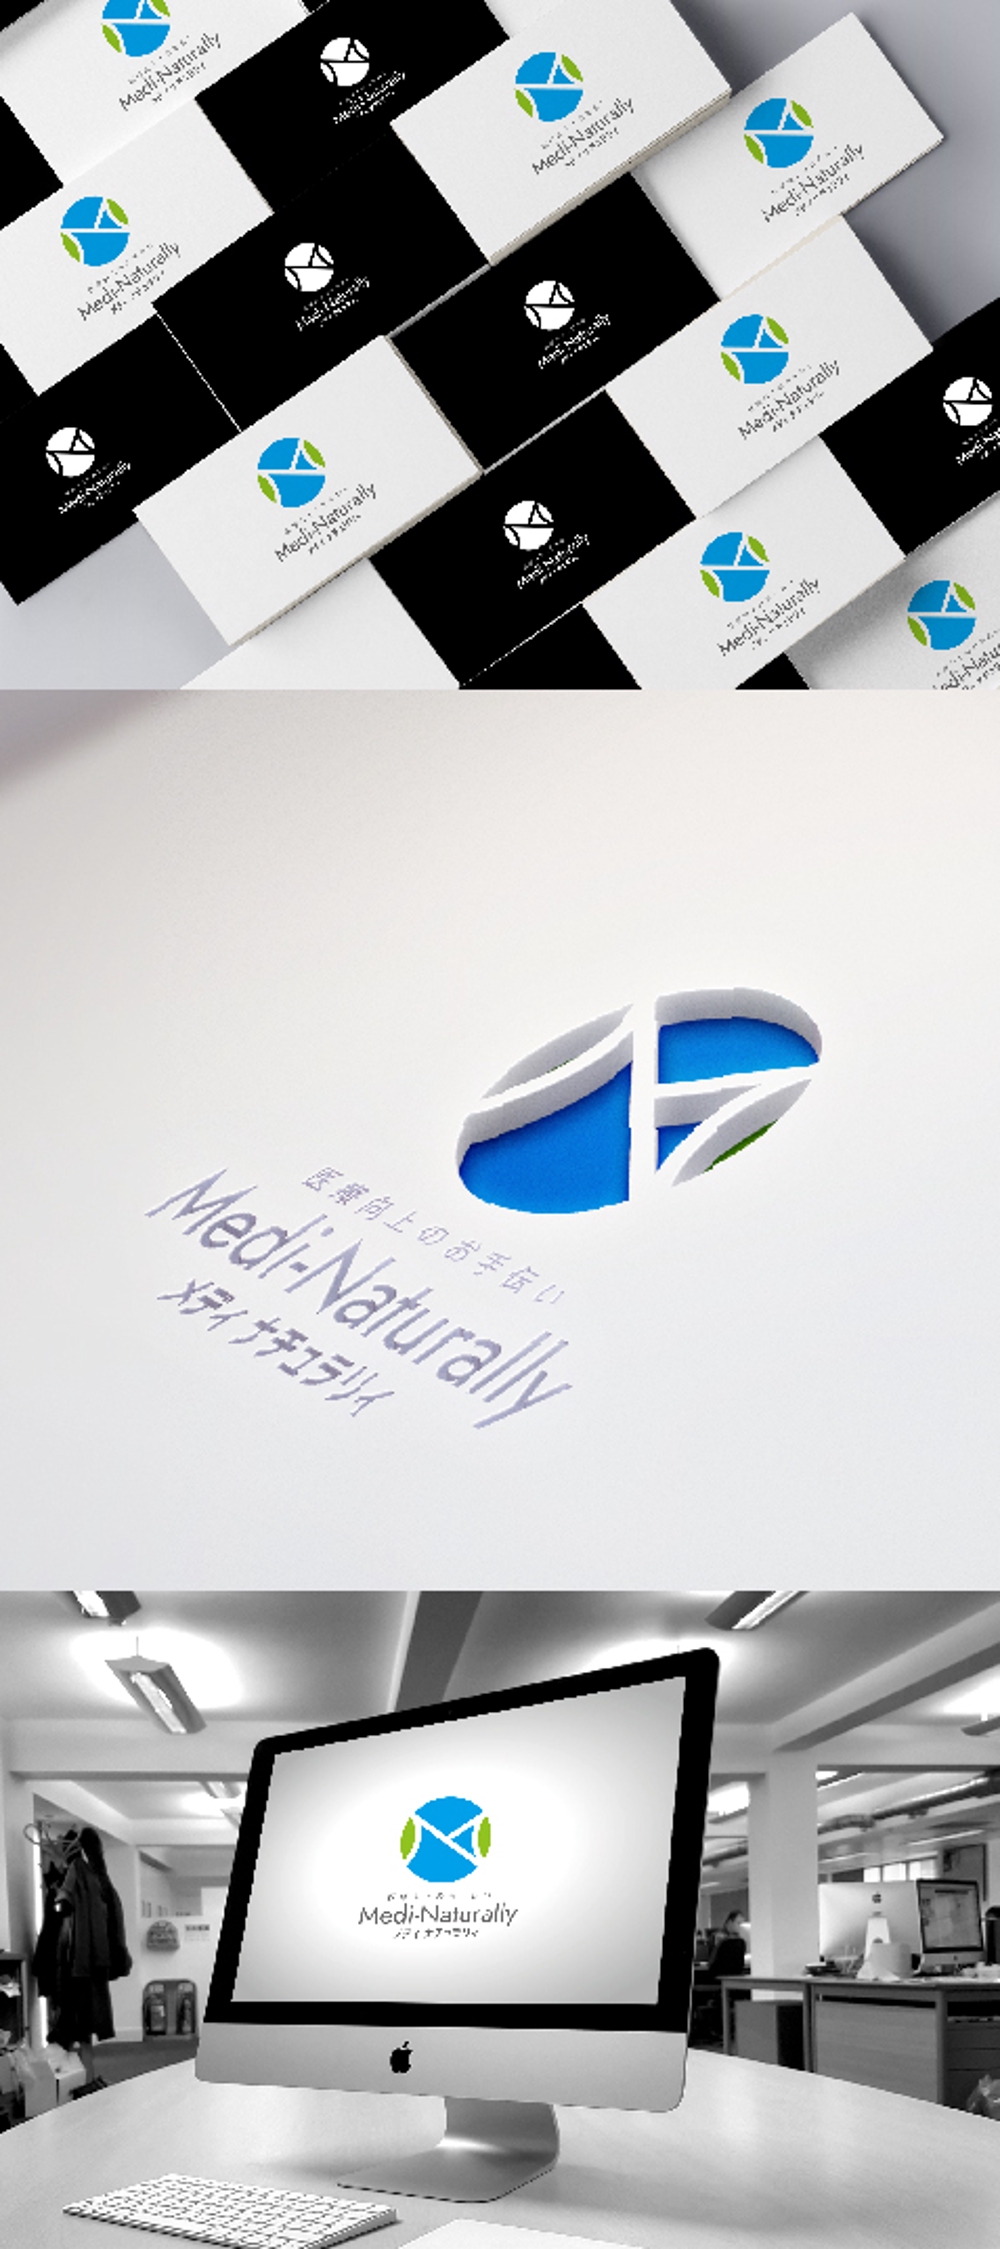 当社サブタイトル「Medi Naturally」（メディナチュラリ）のロゴを作成したい。